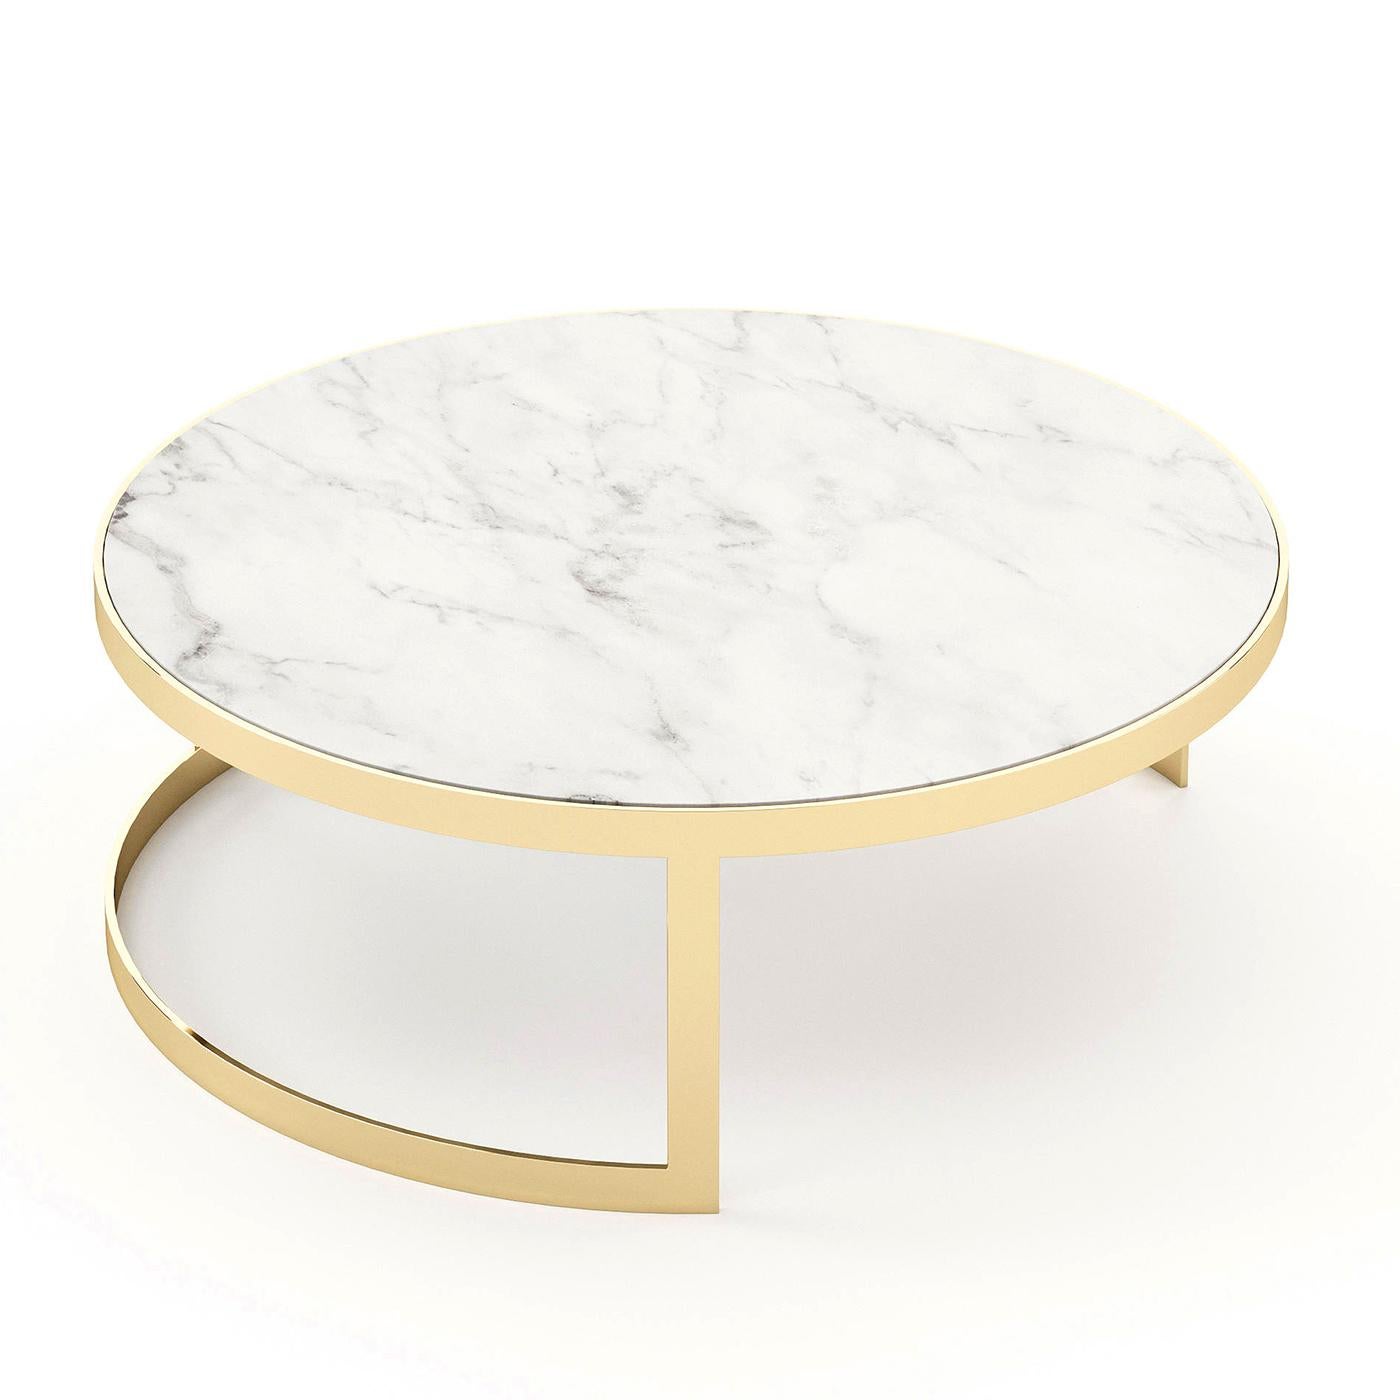 Table basse Torent 100 avec plateau en marbre blanc carrara
et avec une base en acier inoxydable poli en finition dorée.